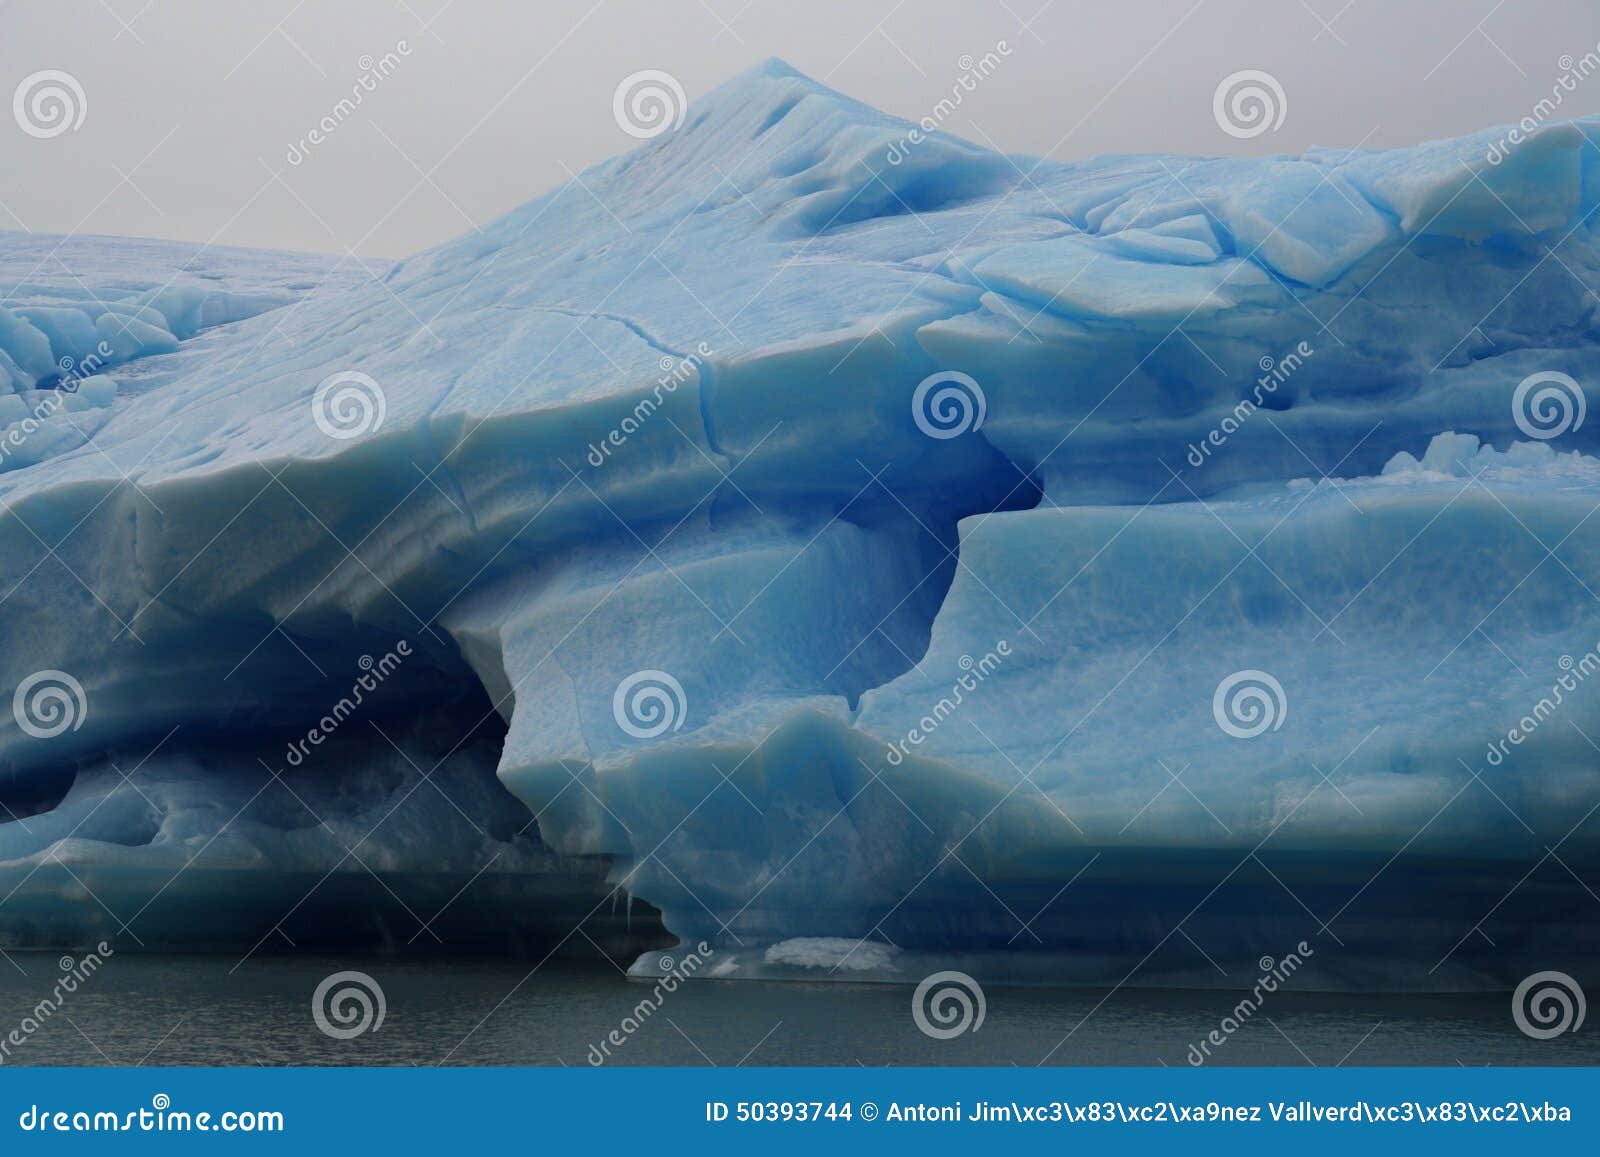 big iceberg in los glaciares national park, argentina